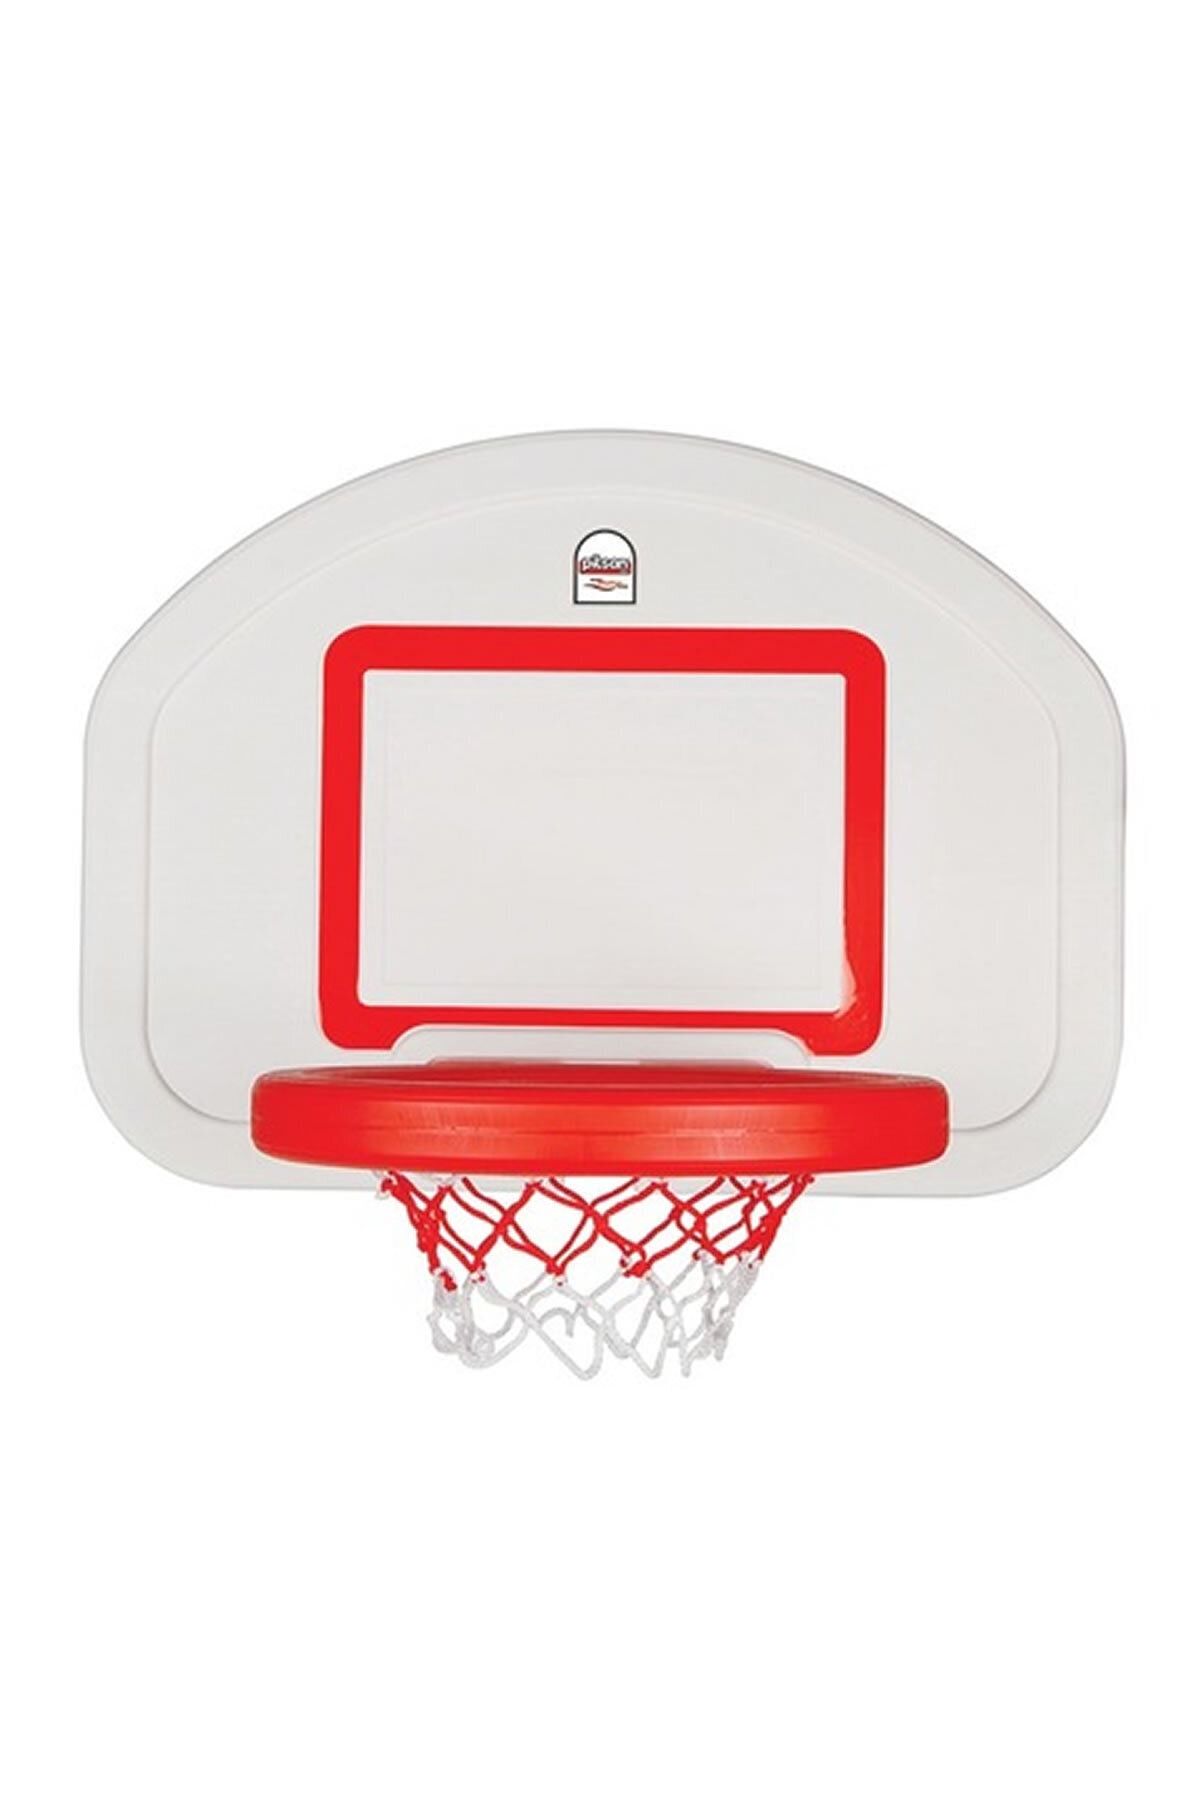 PİLSAN Profesyonel Basket Seti Askılı